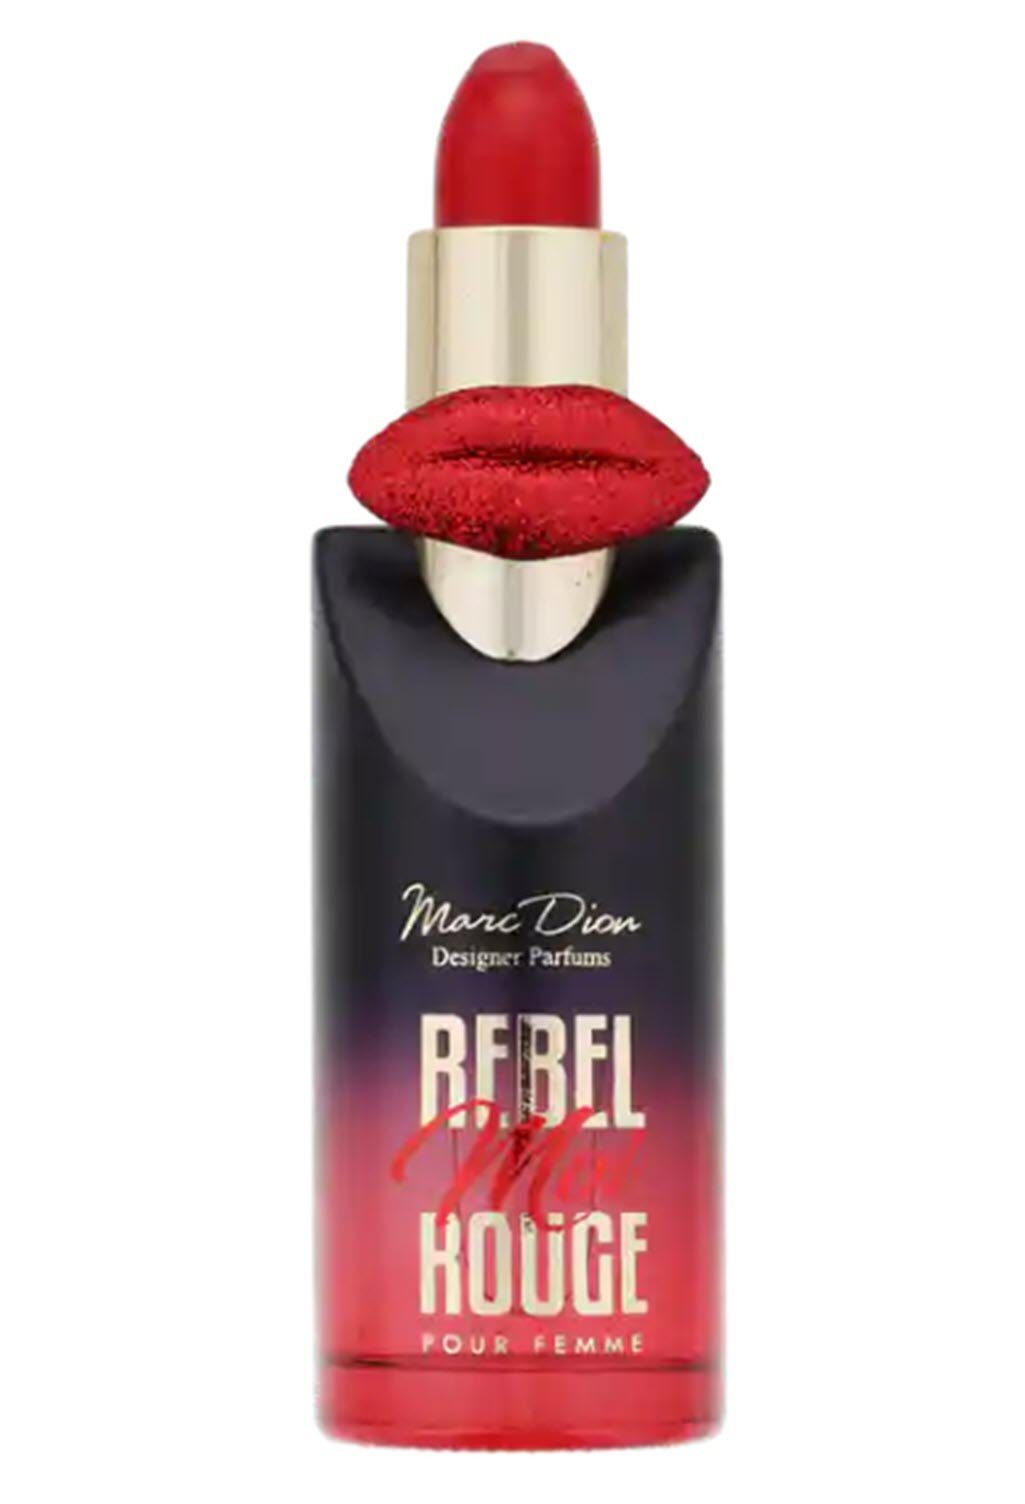 Damen Parfums Spectrum Eau de Parfum Marc Dion Rebel Moi Rouge Eau De Parfum 100 ml Vaporisateur red